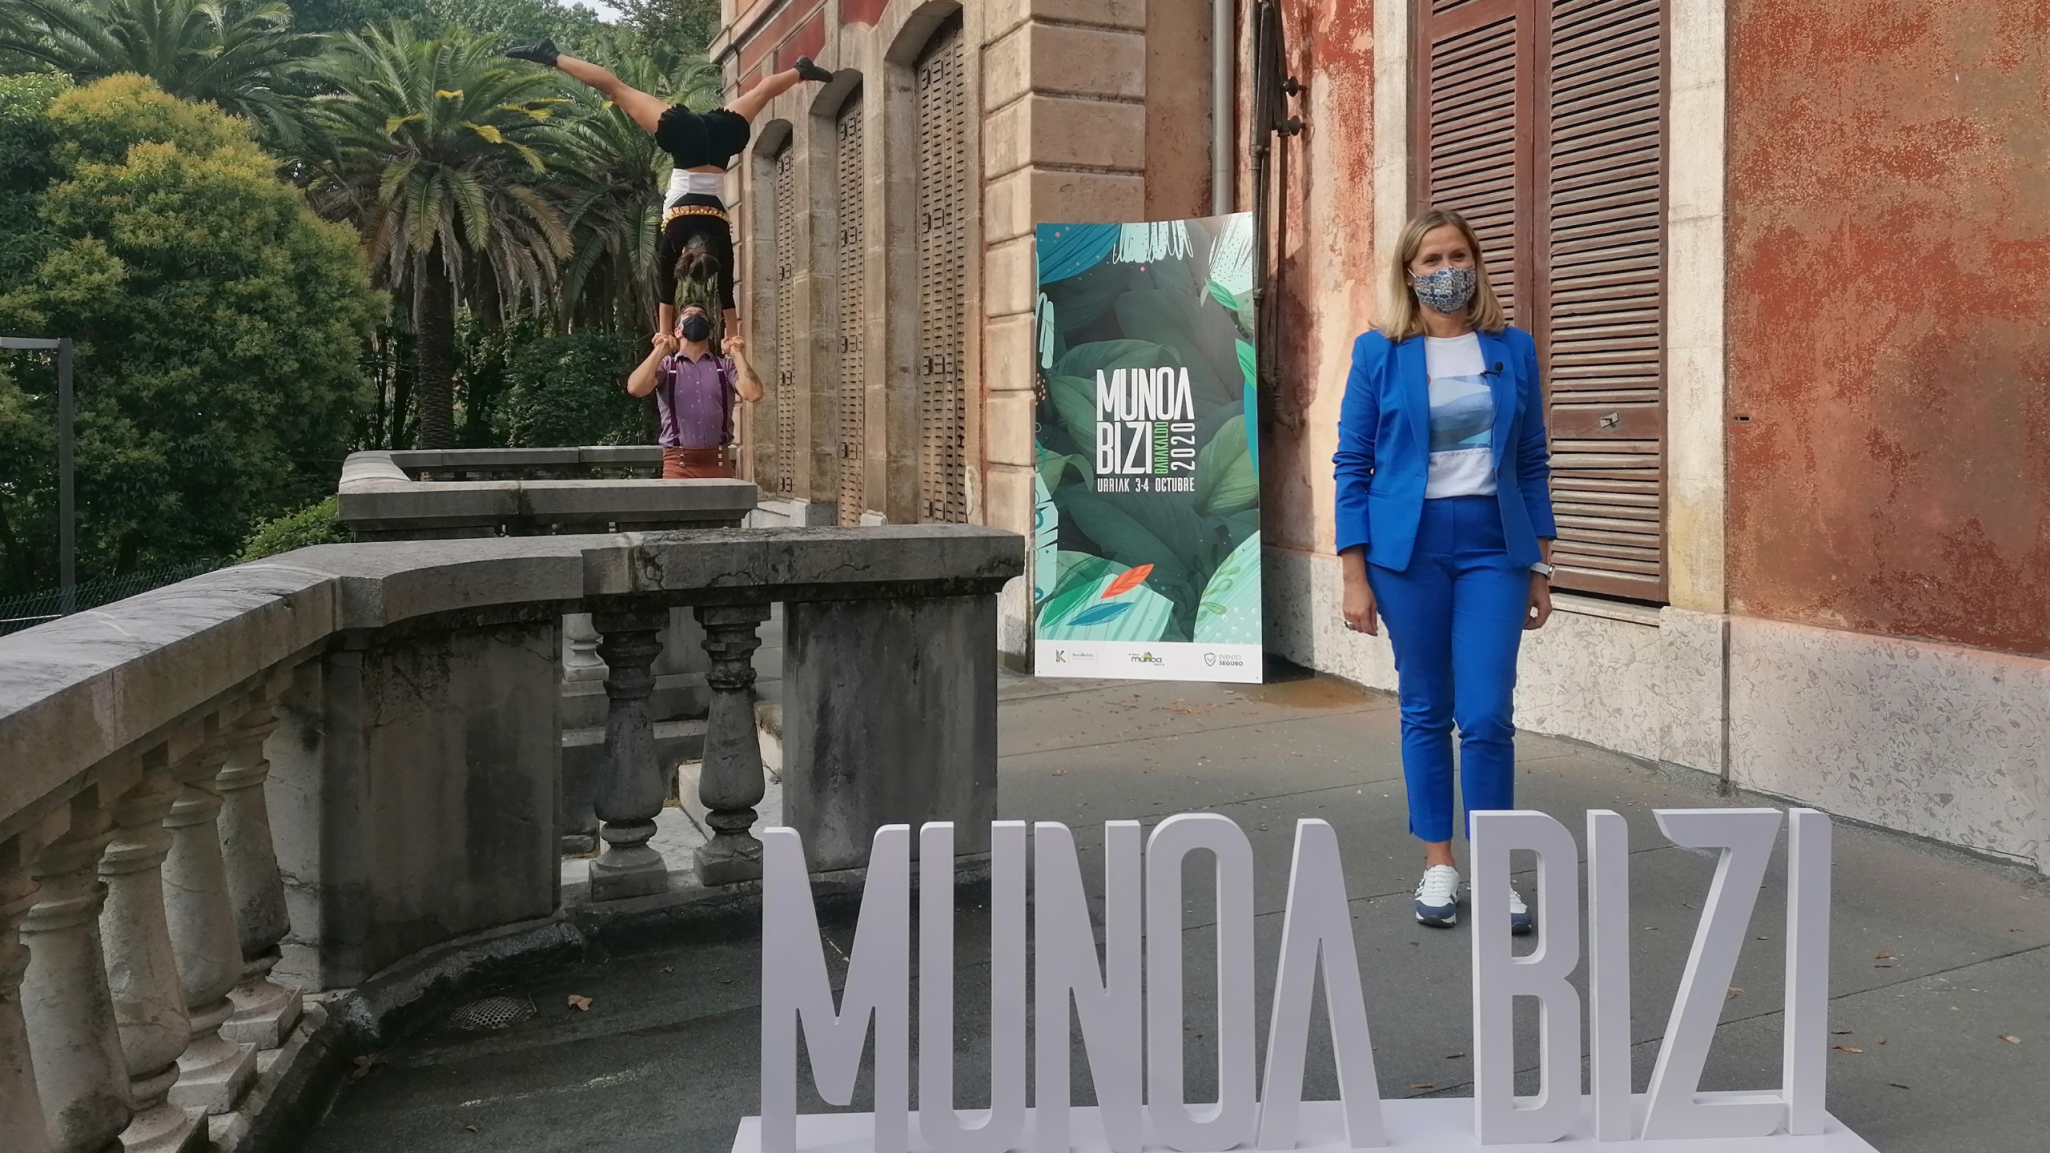 Munoa Bizi regresa a la Finca Munoa de Barakaldo